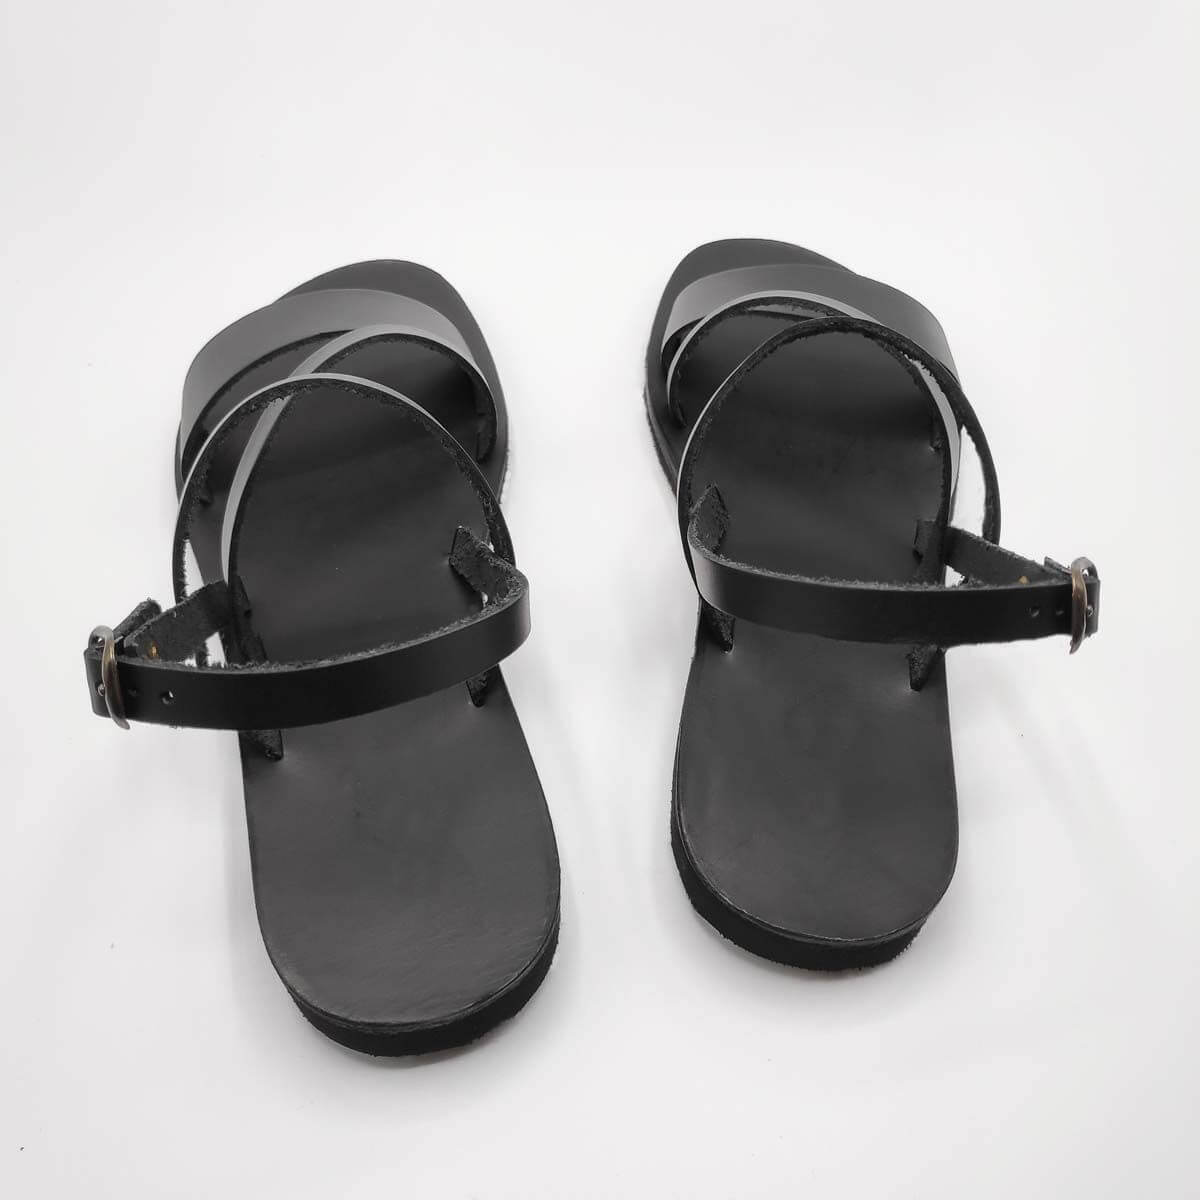 Kini Handmade Hellenik Greek Style Sandal Leather Sandals | Pagonis ...